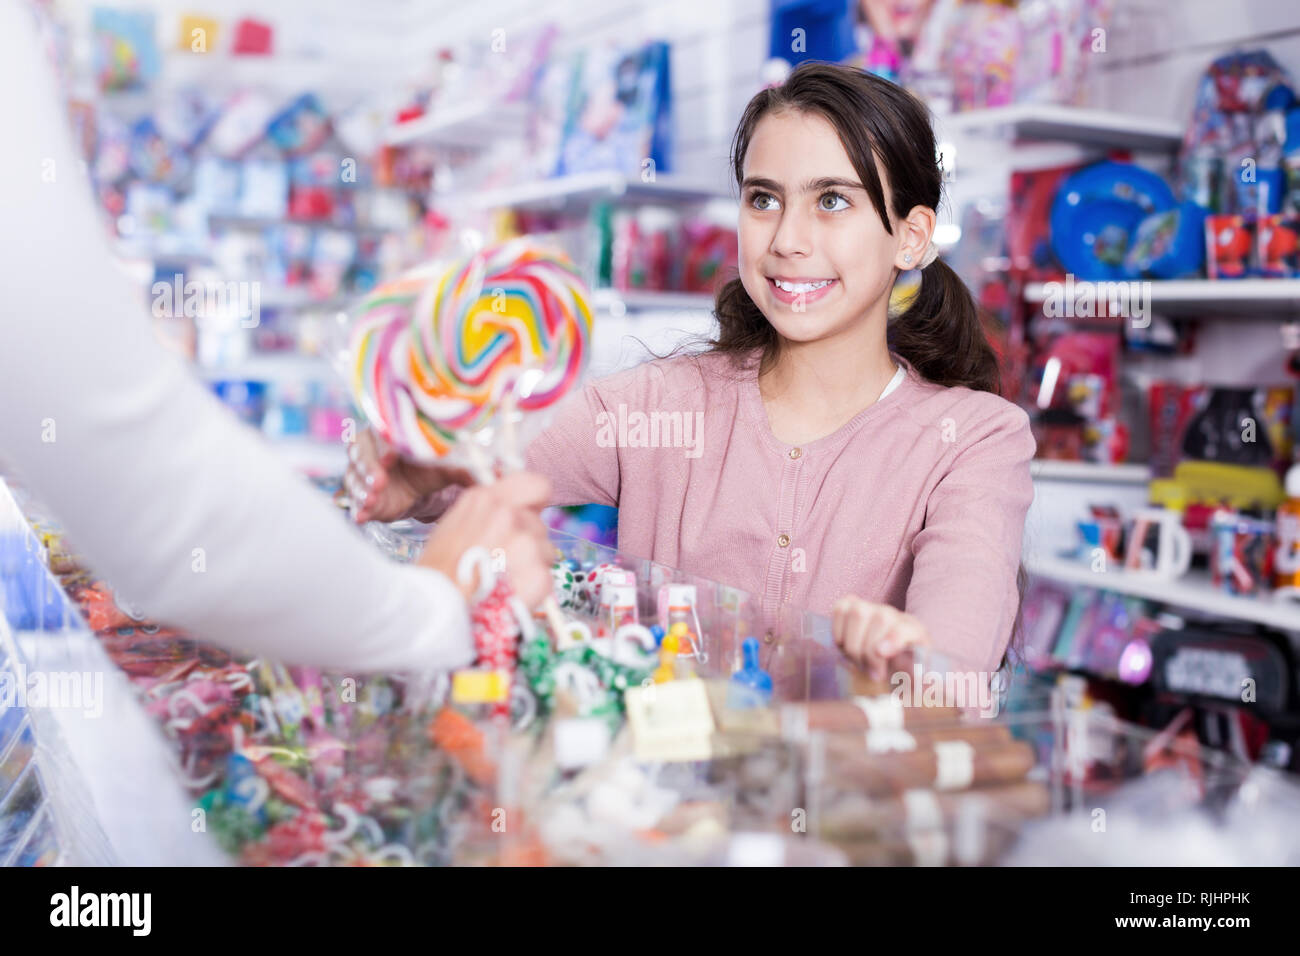 La pequeña niña positivo comprar dulces del vendedor en la tienda ...